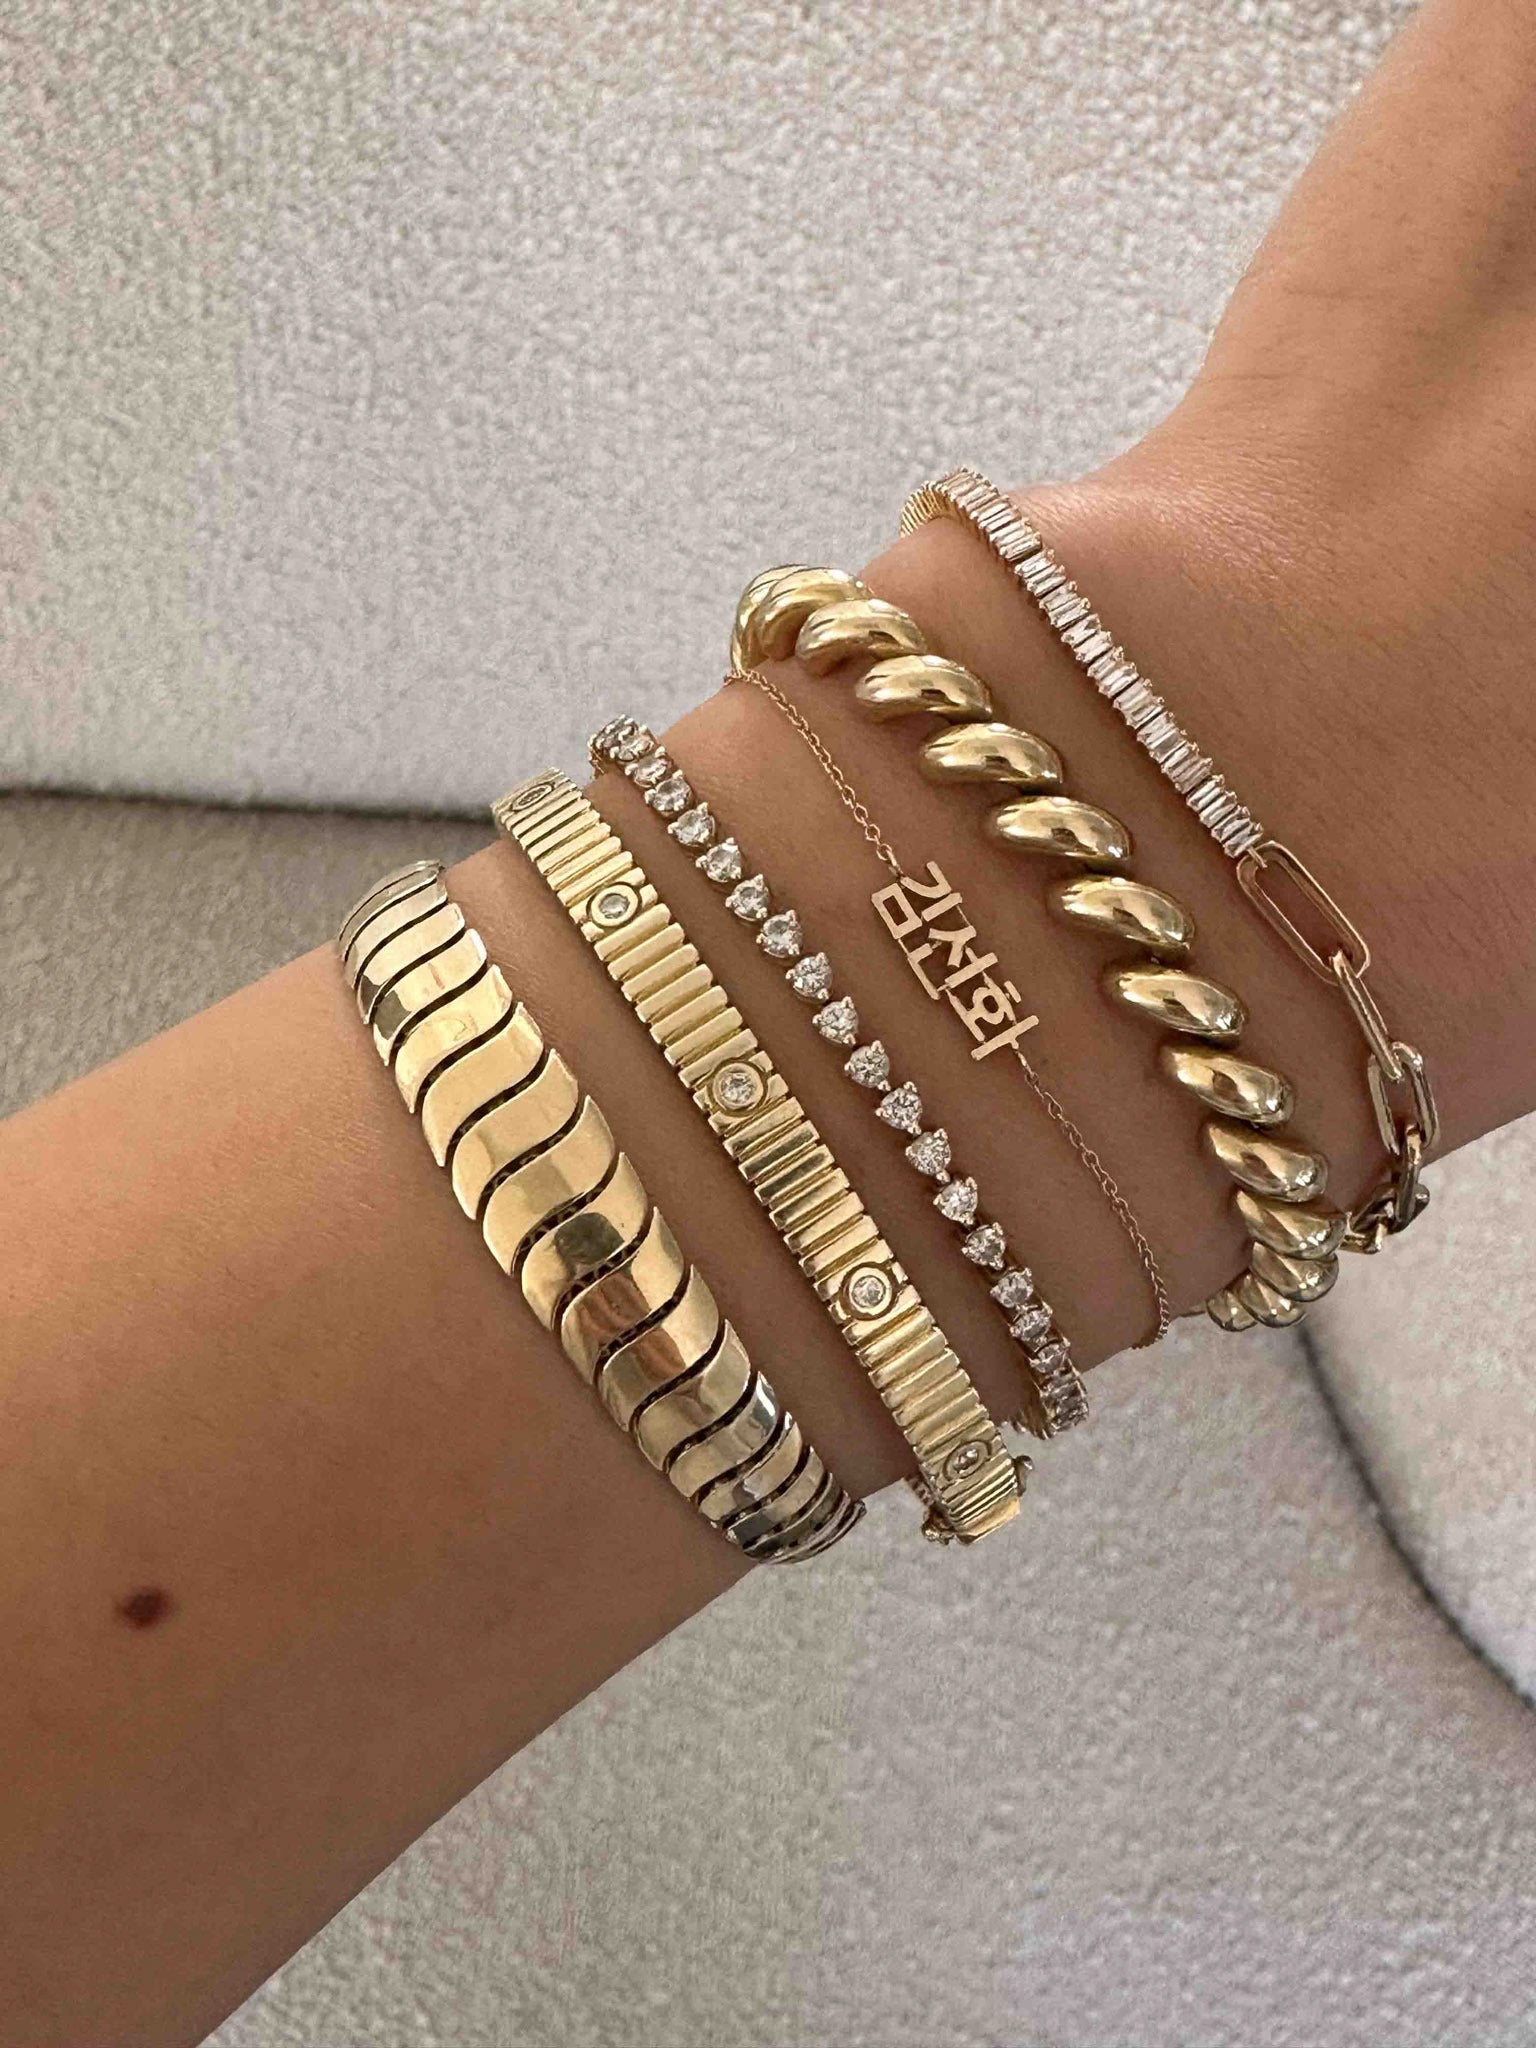 Designer Jewelry Earrings Pendant Charm Bracelets Gold Love V